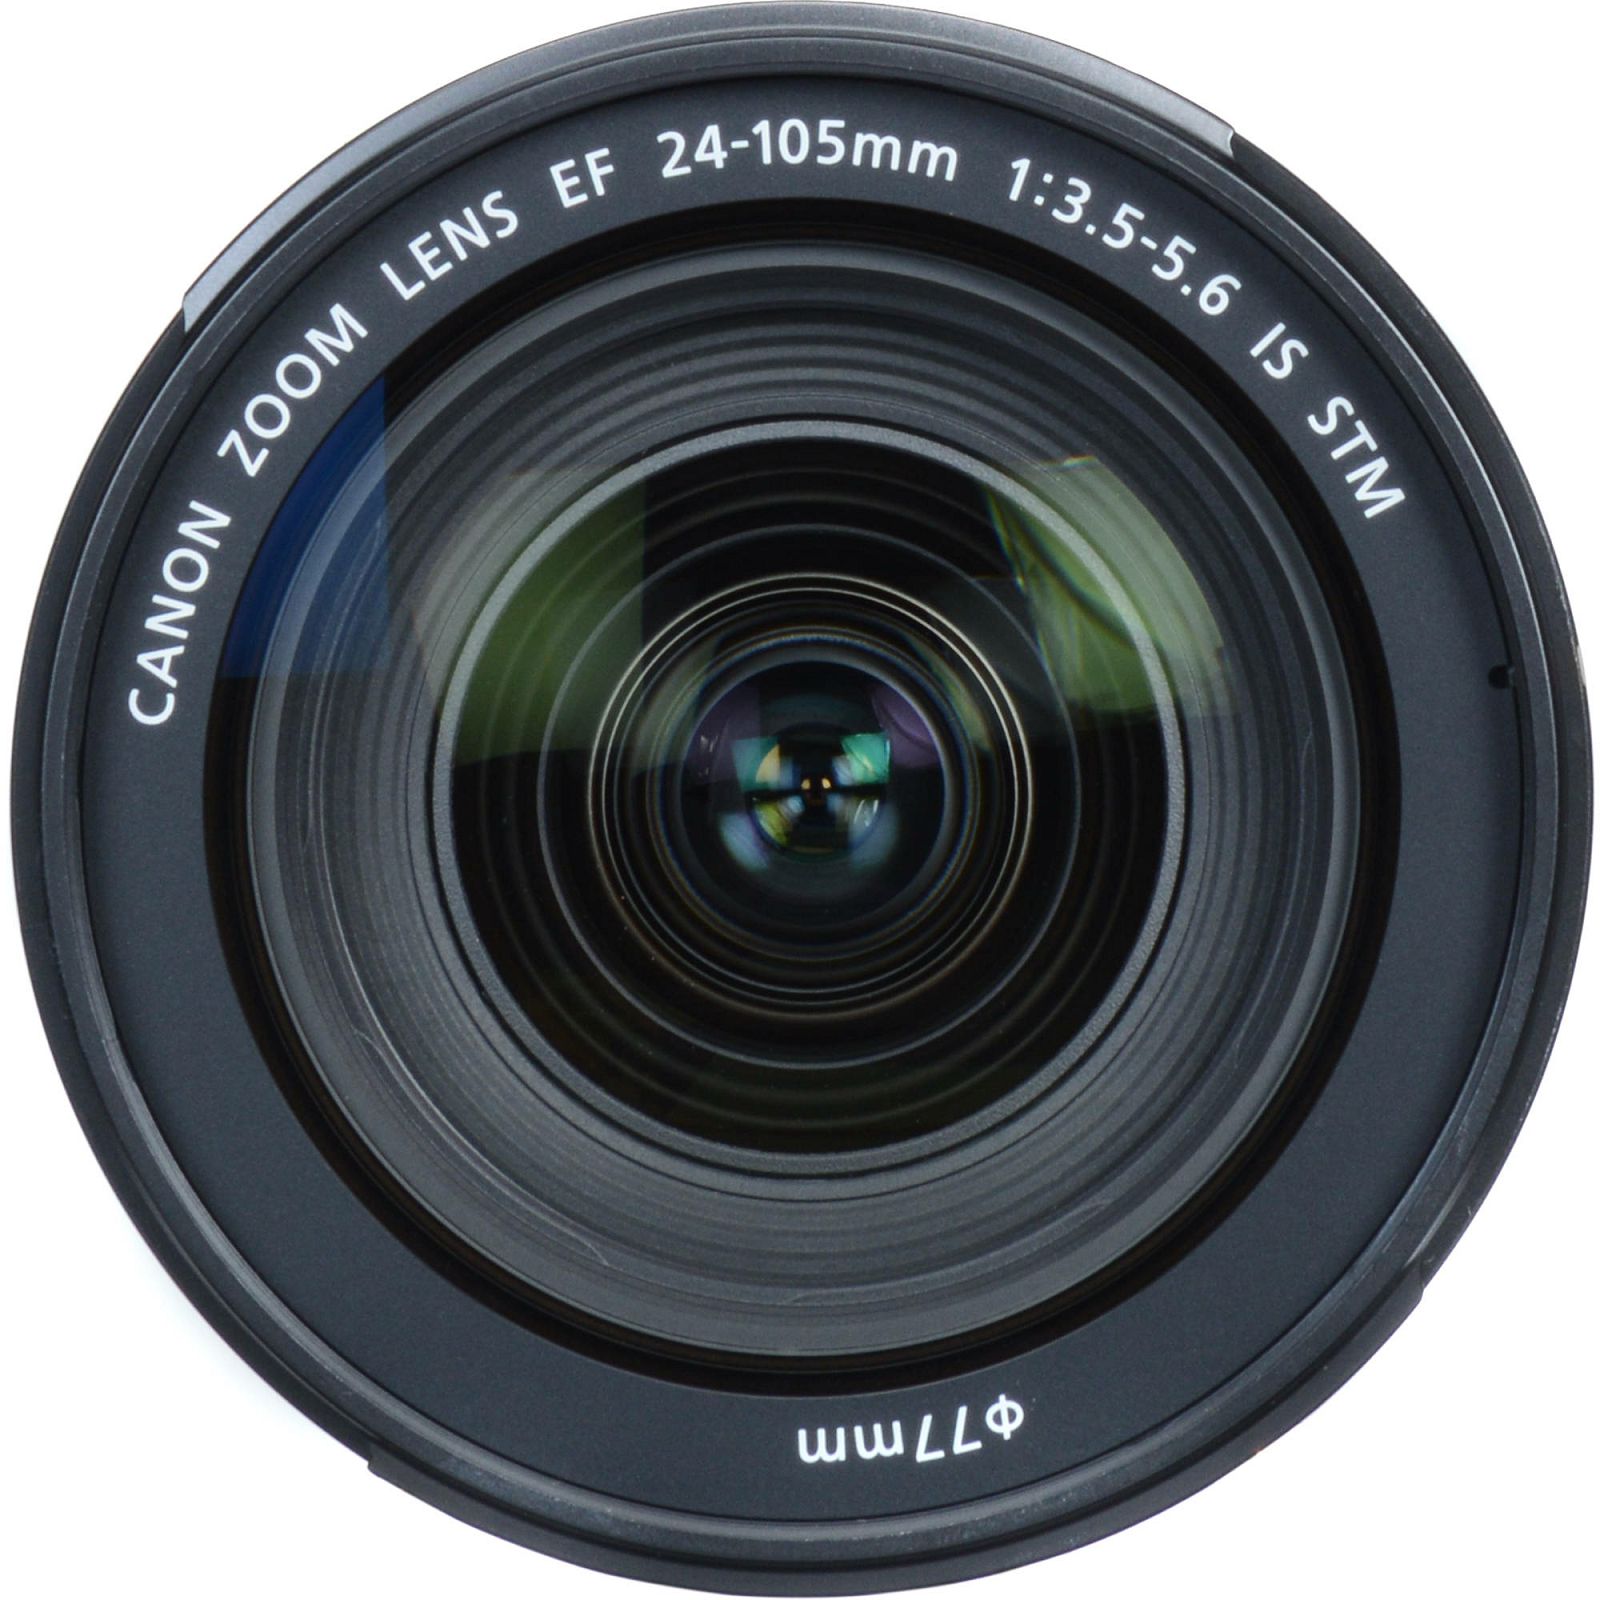 Canon EF 24-105 f/3.5-5.6 IS STM Standardni objektiv za fotoaparat 24-105mm f3.5-5.6 zoom lens (9521B005AA)